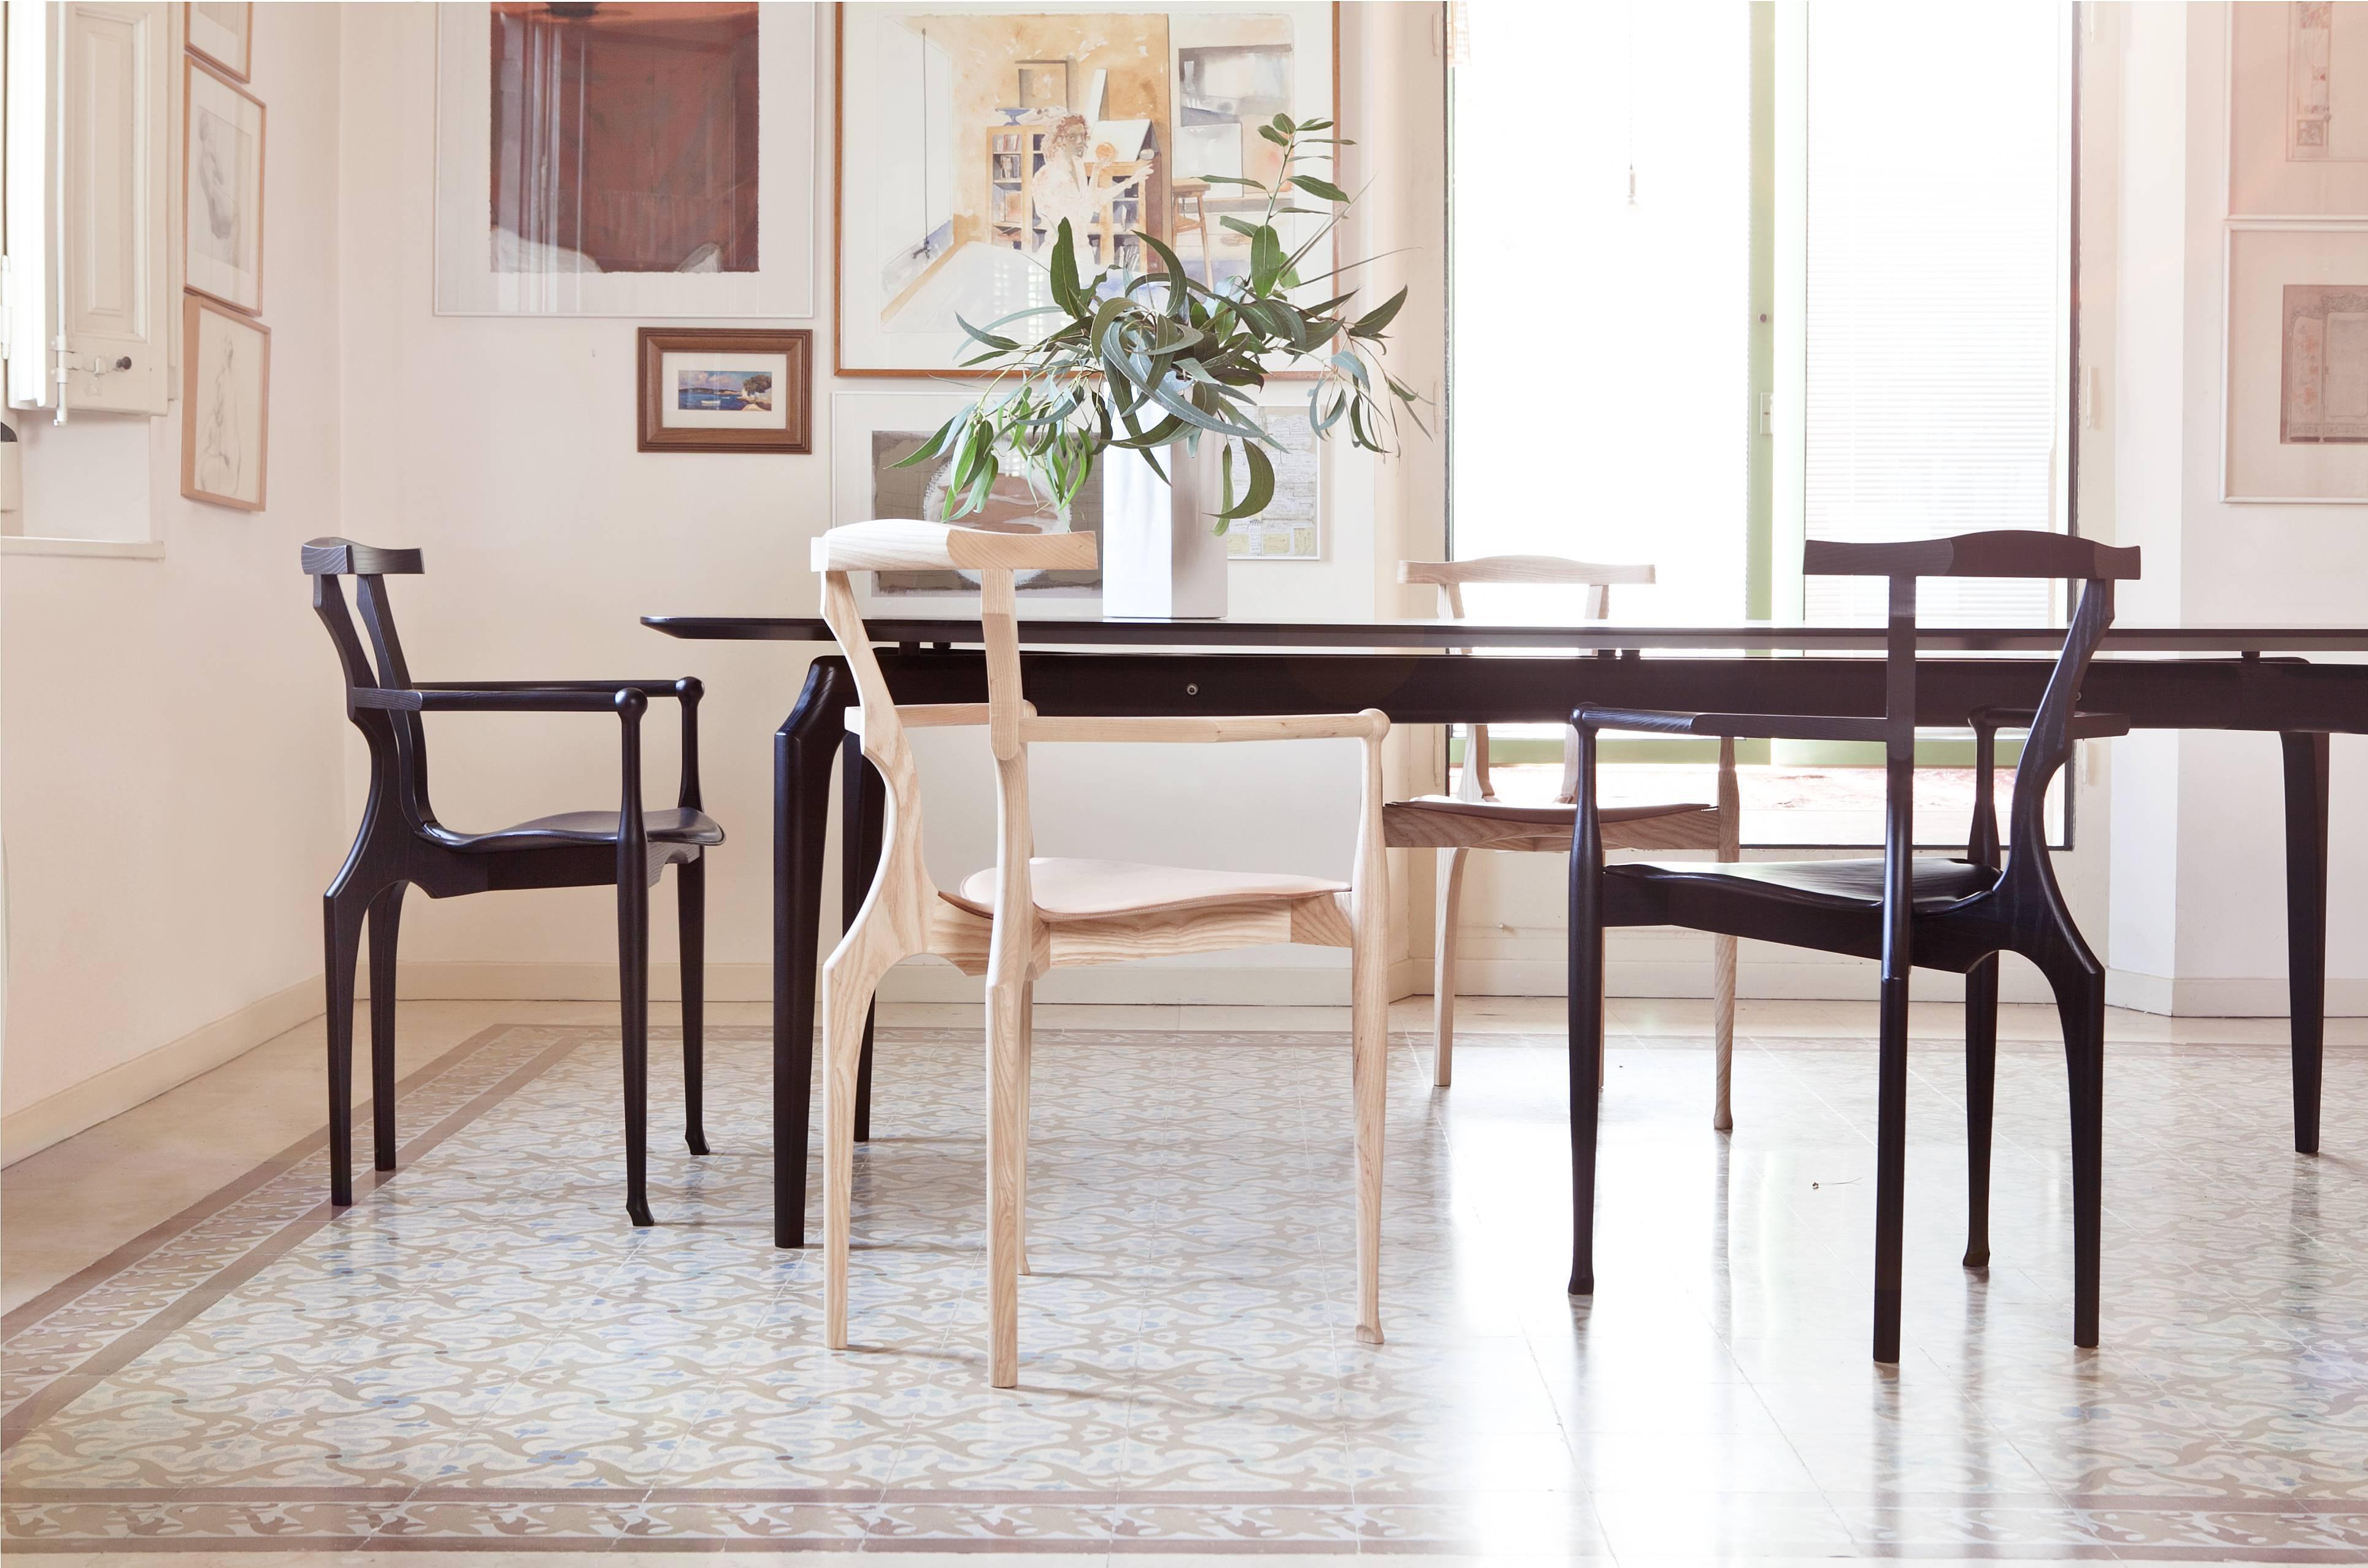 
La chaise Gaulino est l'un des meilleurs designs d'Oscar Tusquets et est devenue une icône du design espagnol. Fabriqué exclusivement à partir de bois et de cuir, le nom provient des influences qui ont inspiré les designers : Antoni Gaudí et Carlo